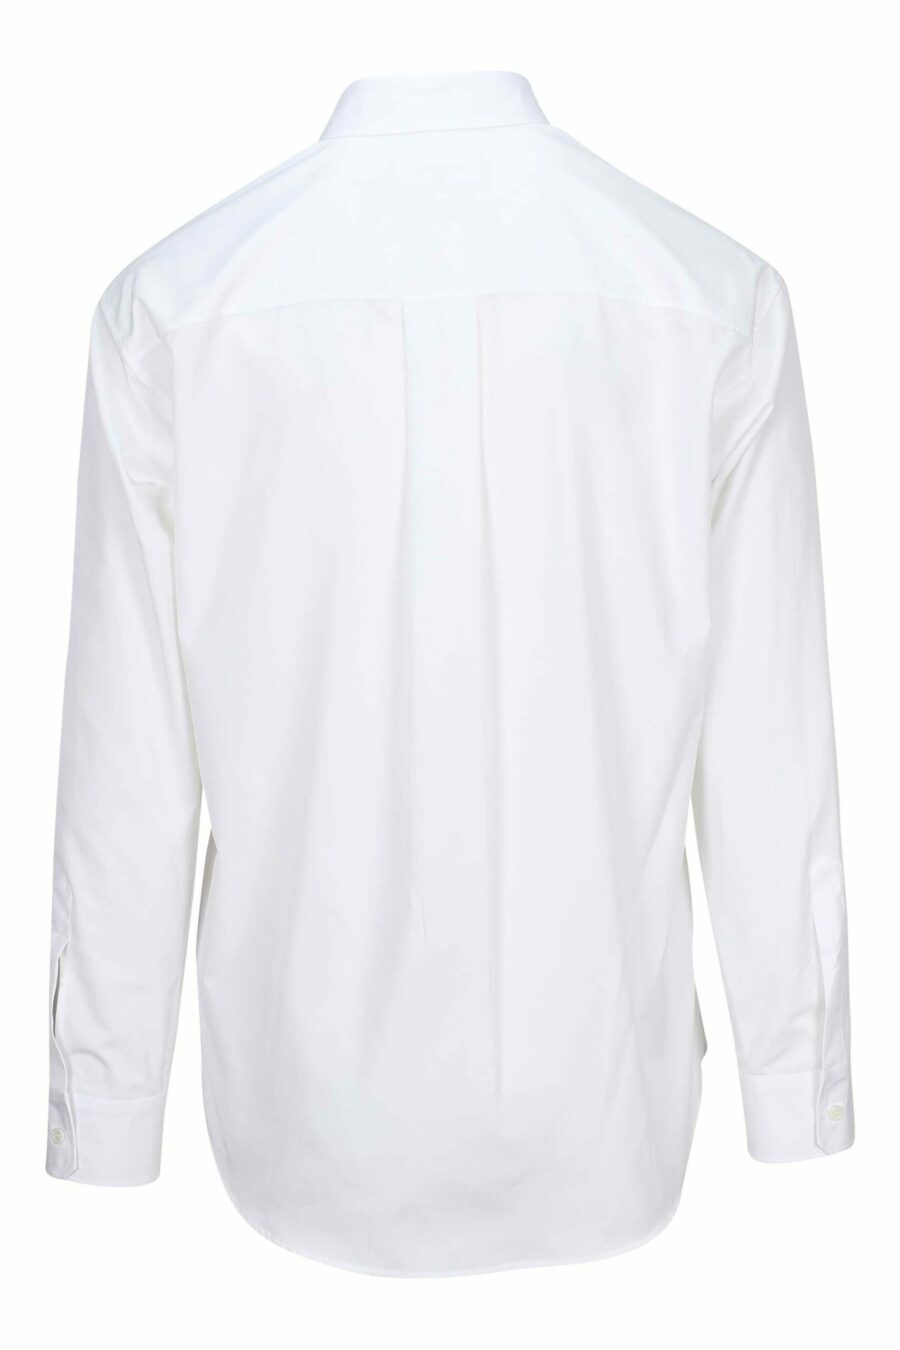 Camisa blanca con maxilogo "icon" - 8052134107577 1 scaled